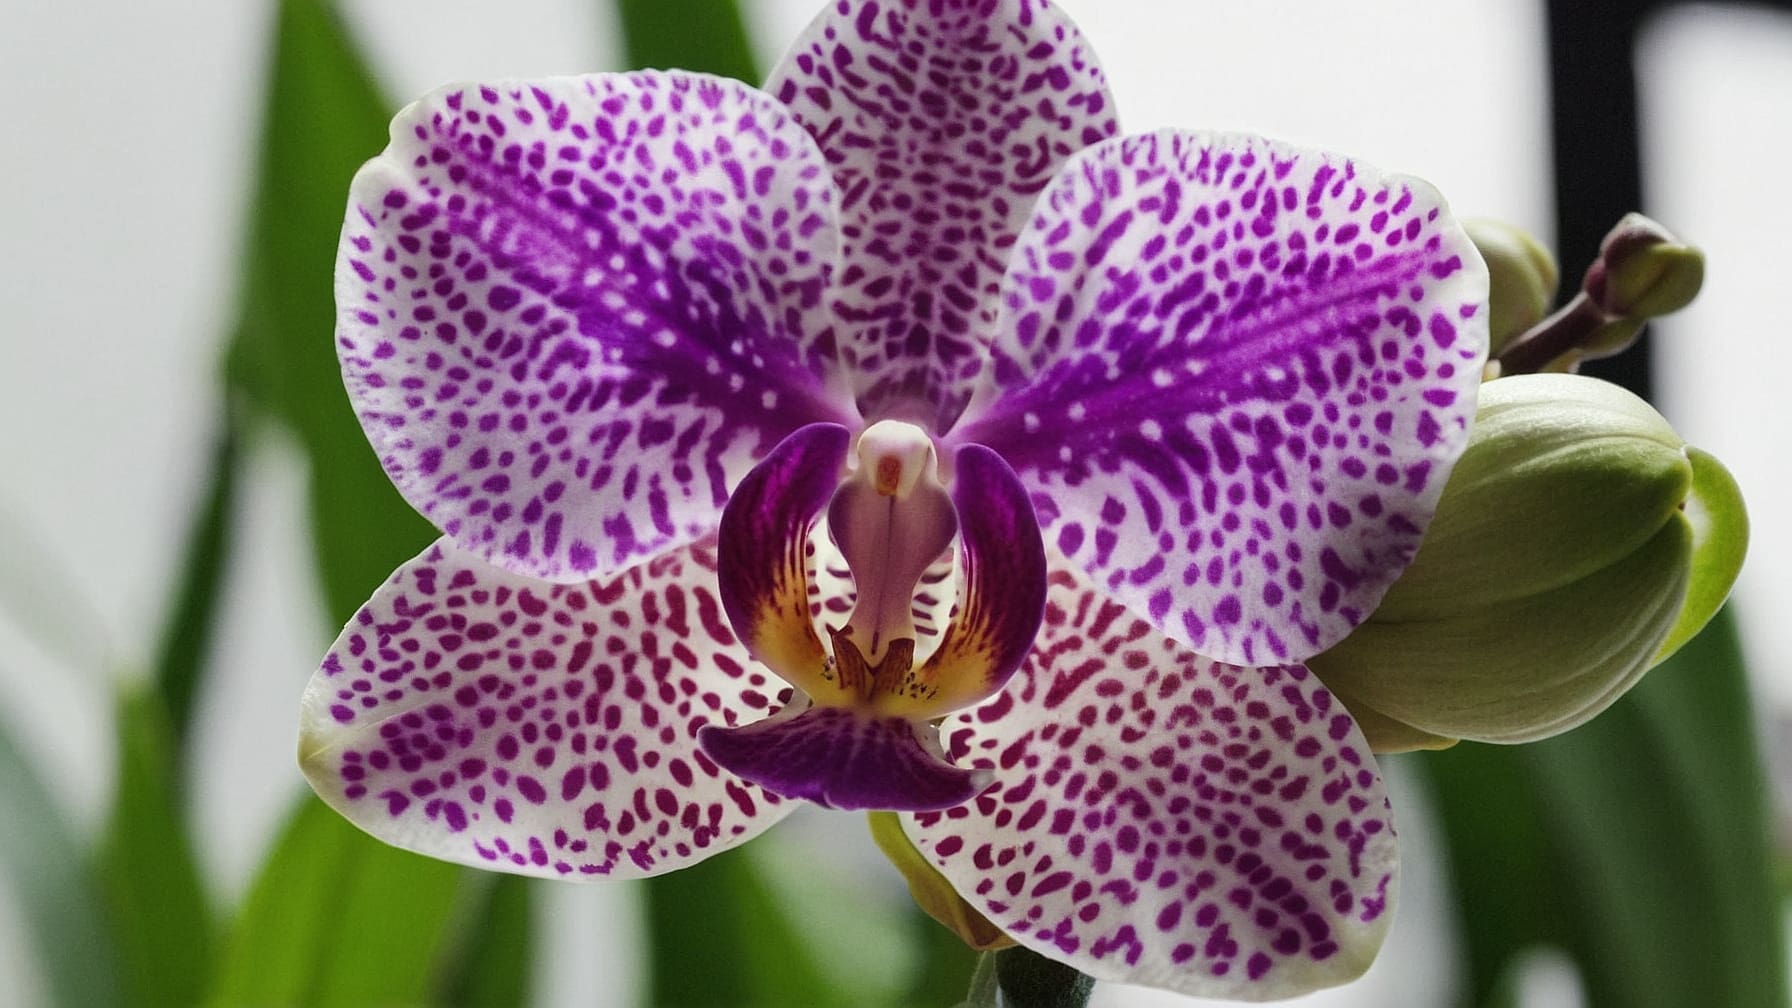 Orchidee regalo festa mamma: scopri perché rappresentano il dono perfetto, unendo eleganza, varietà e significato profondo